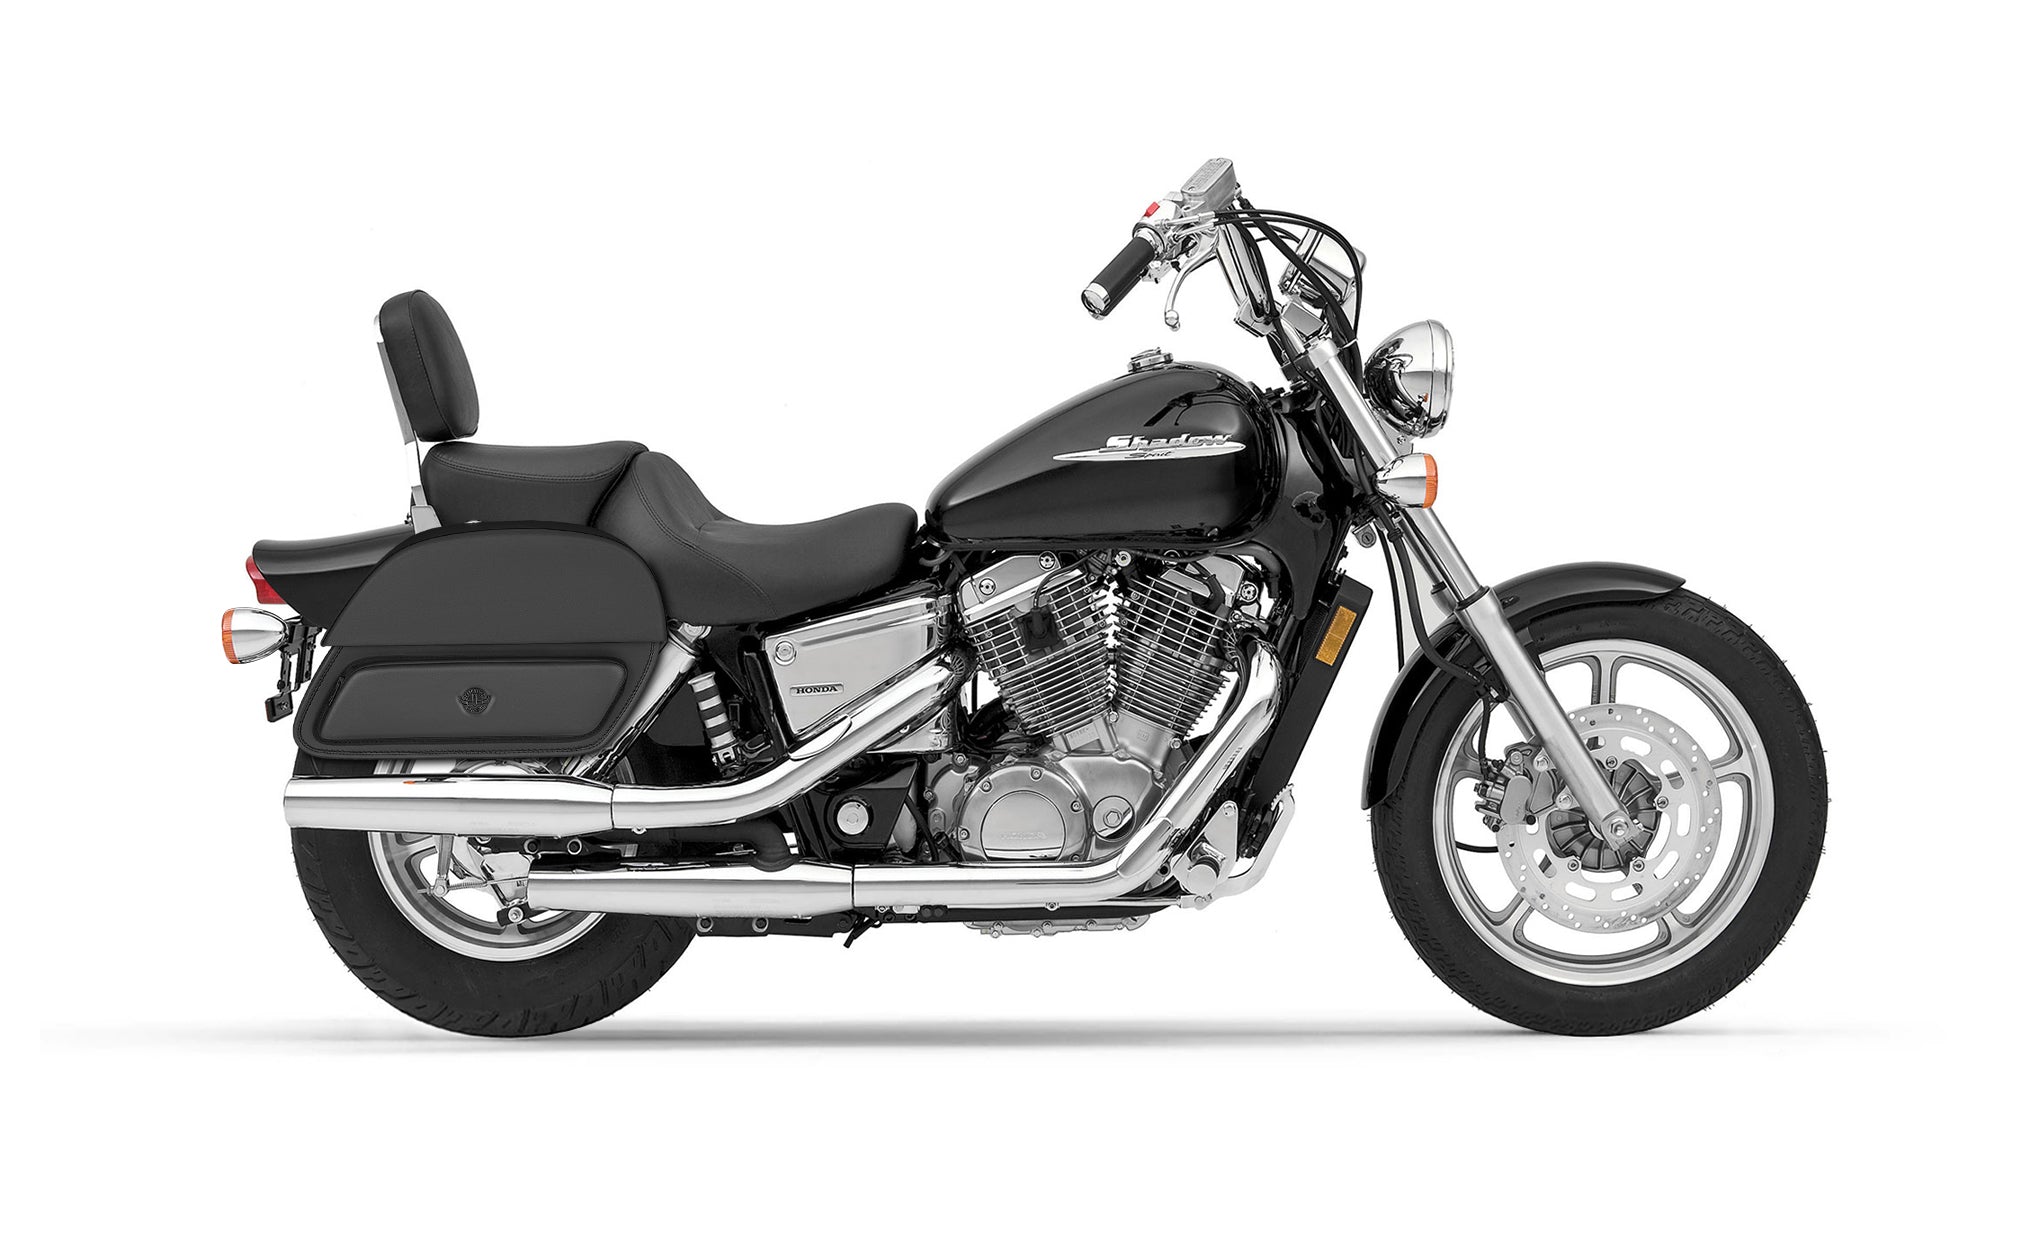 28L - Pantheon Medium Shadow 1100 Spirit Motorcycle Saddlebags on Bike Photo @expand